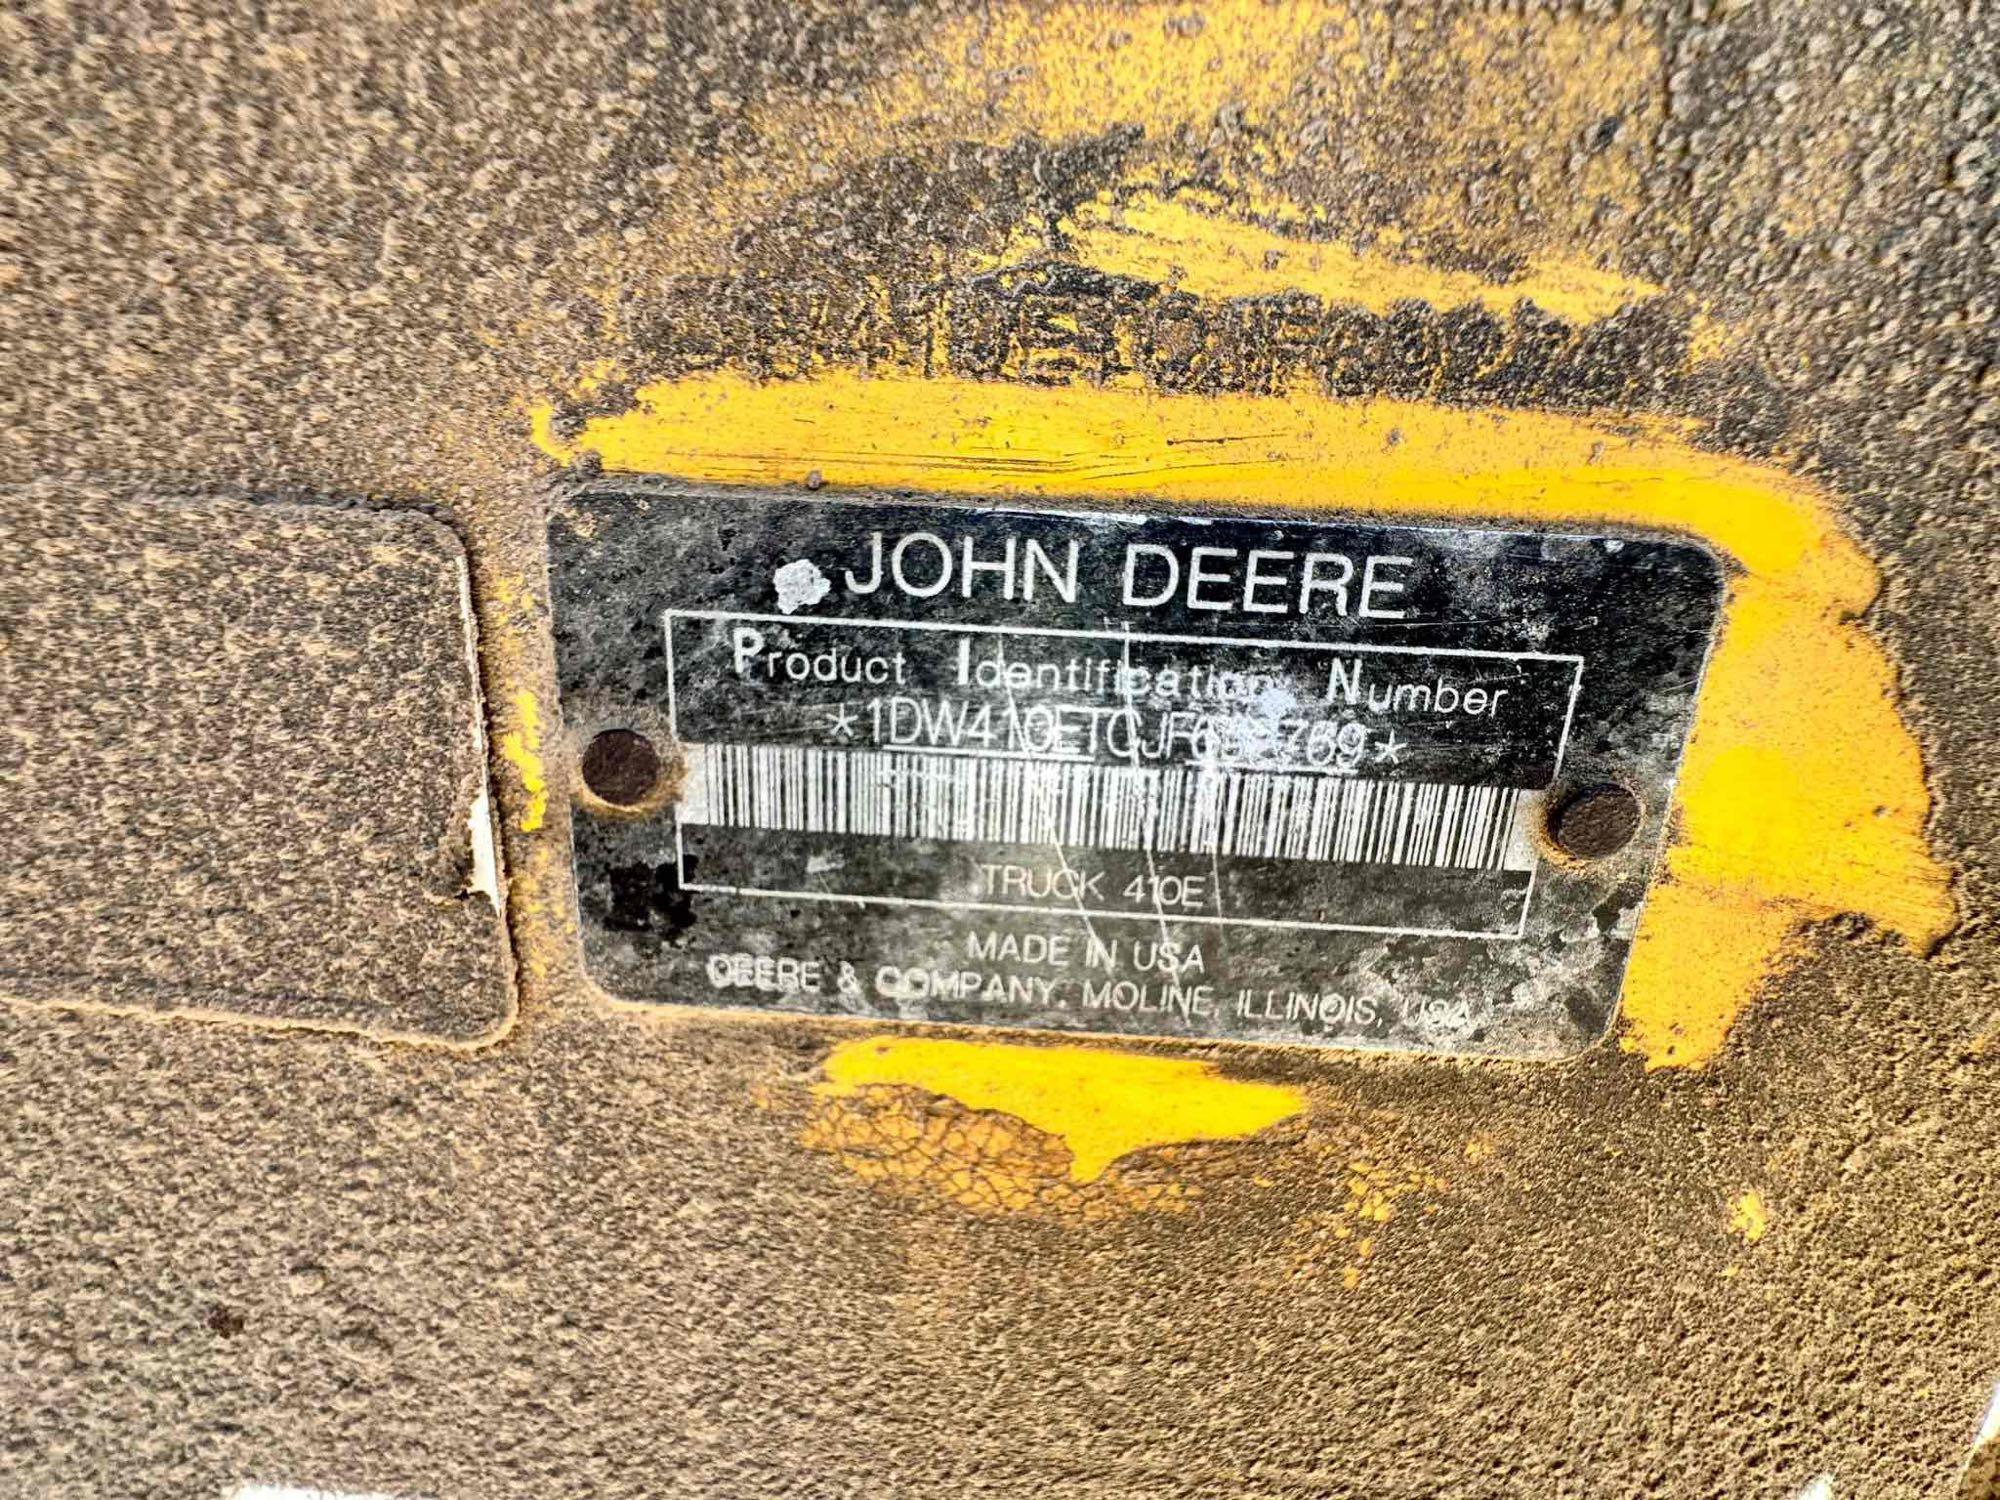 2019 John Deere 410E Articulated Dump Truck